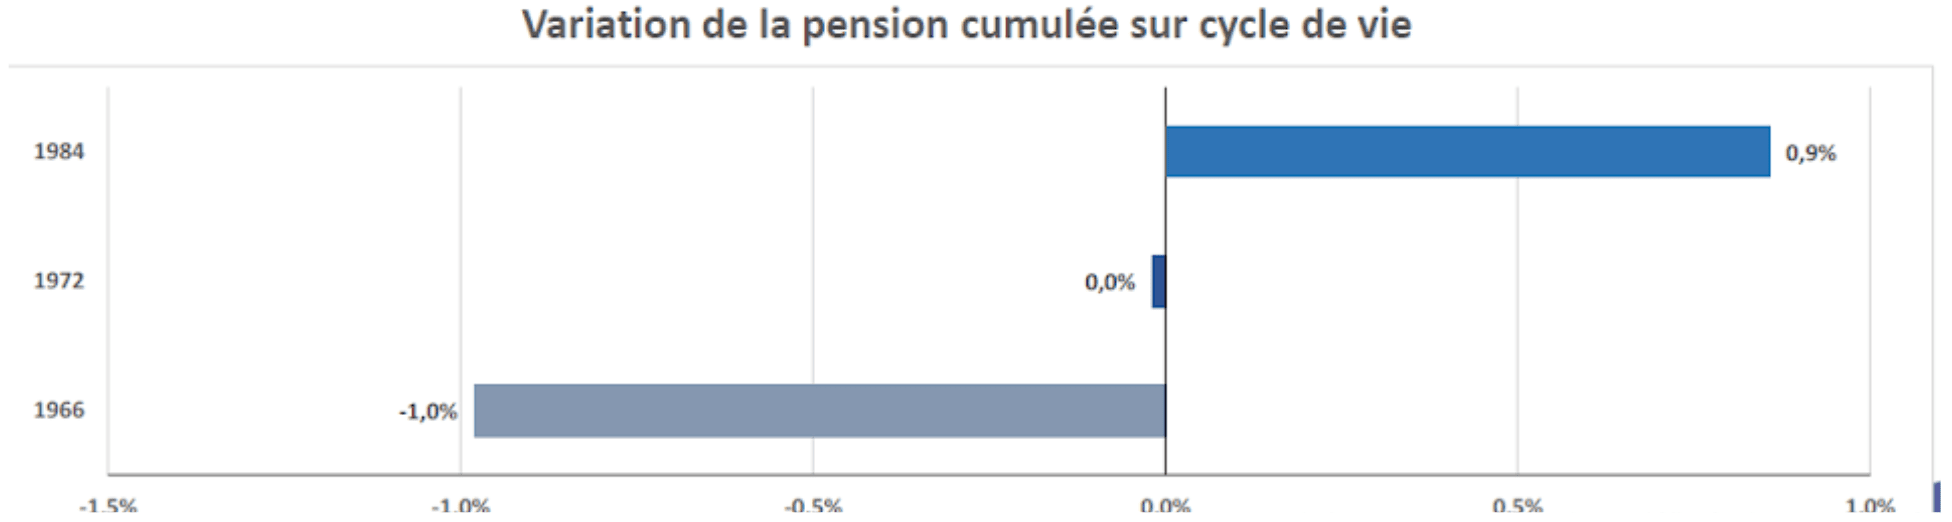 Variation de la pension cumulée sur cycle de vie